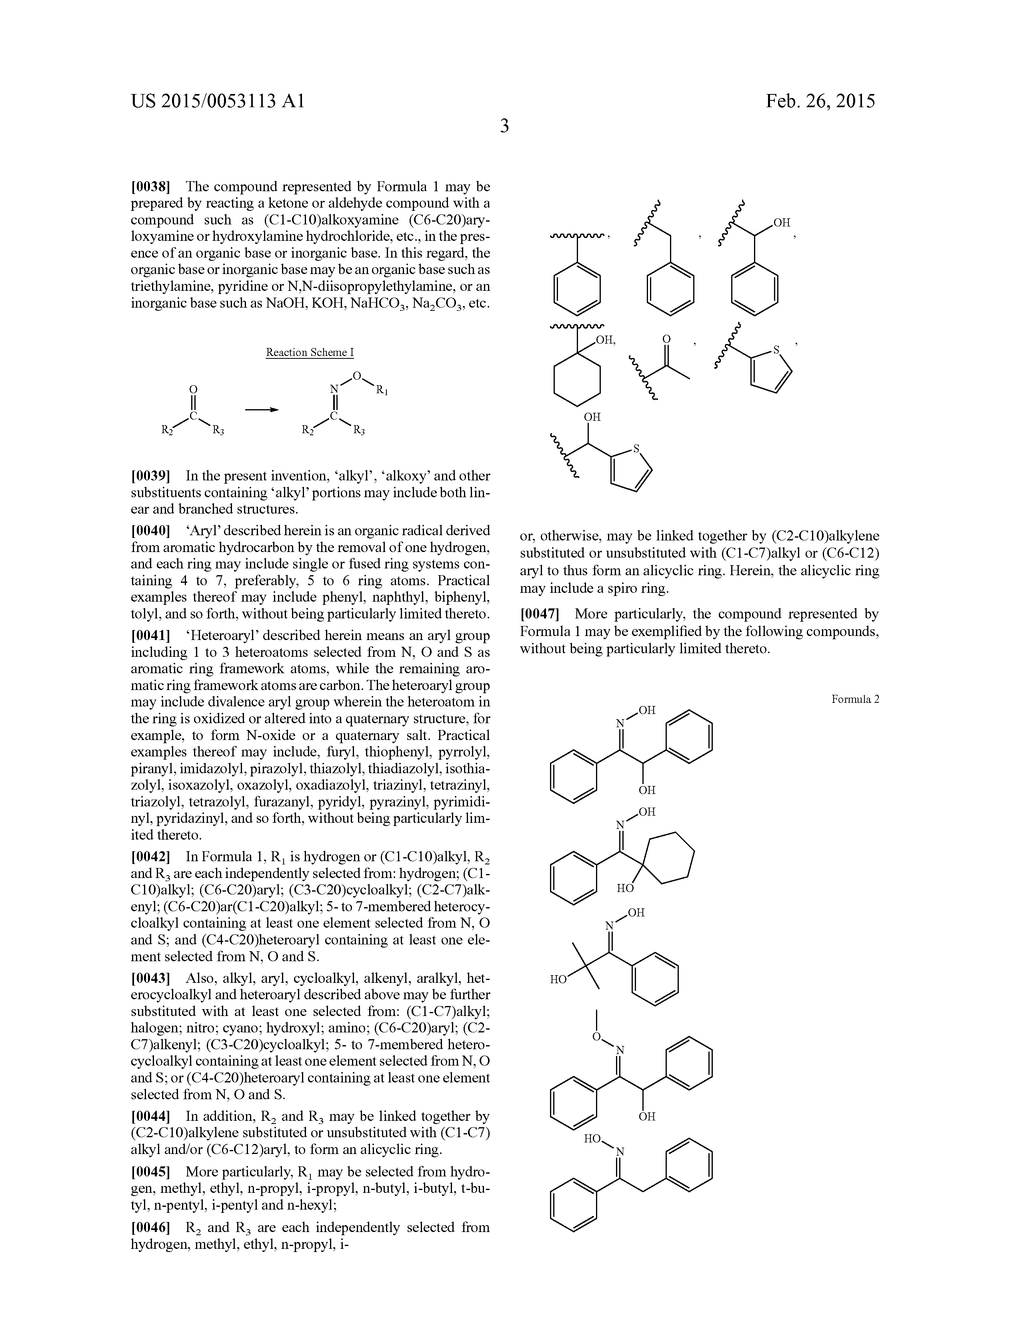 Cellulose Acetate Film - diagram, schematic, and image 04